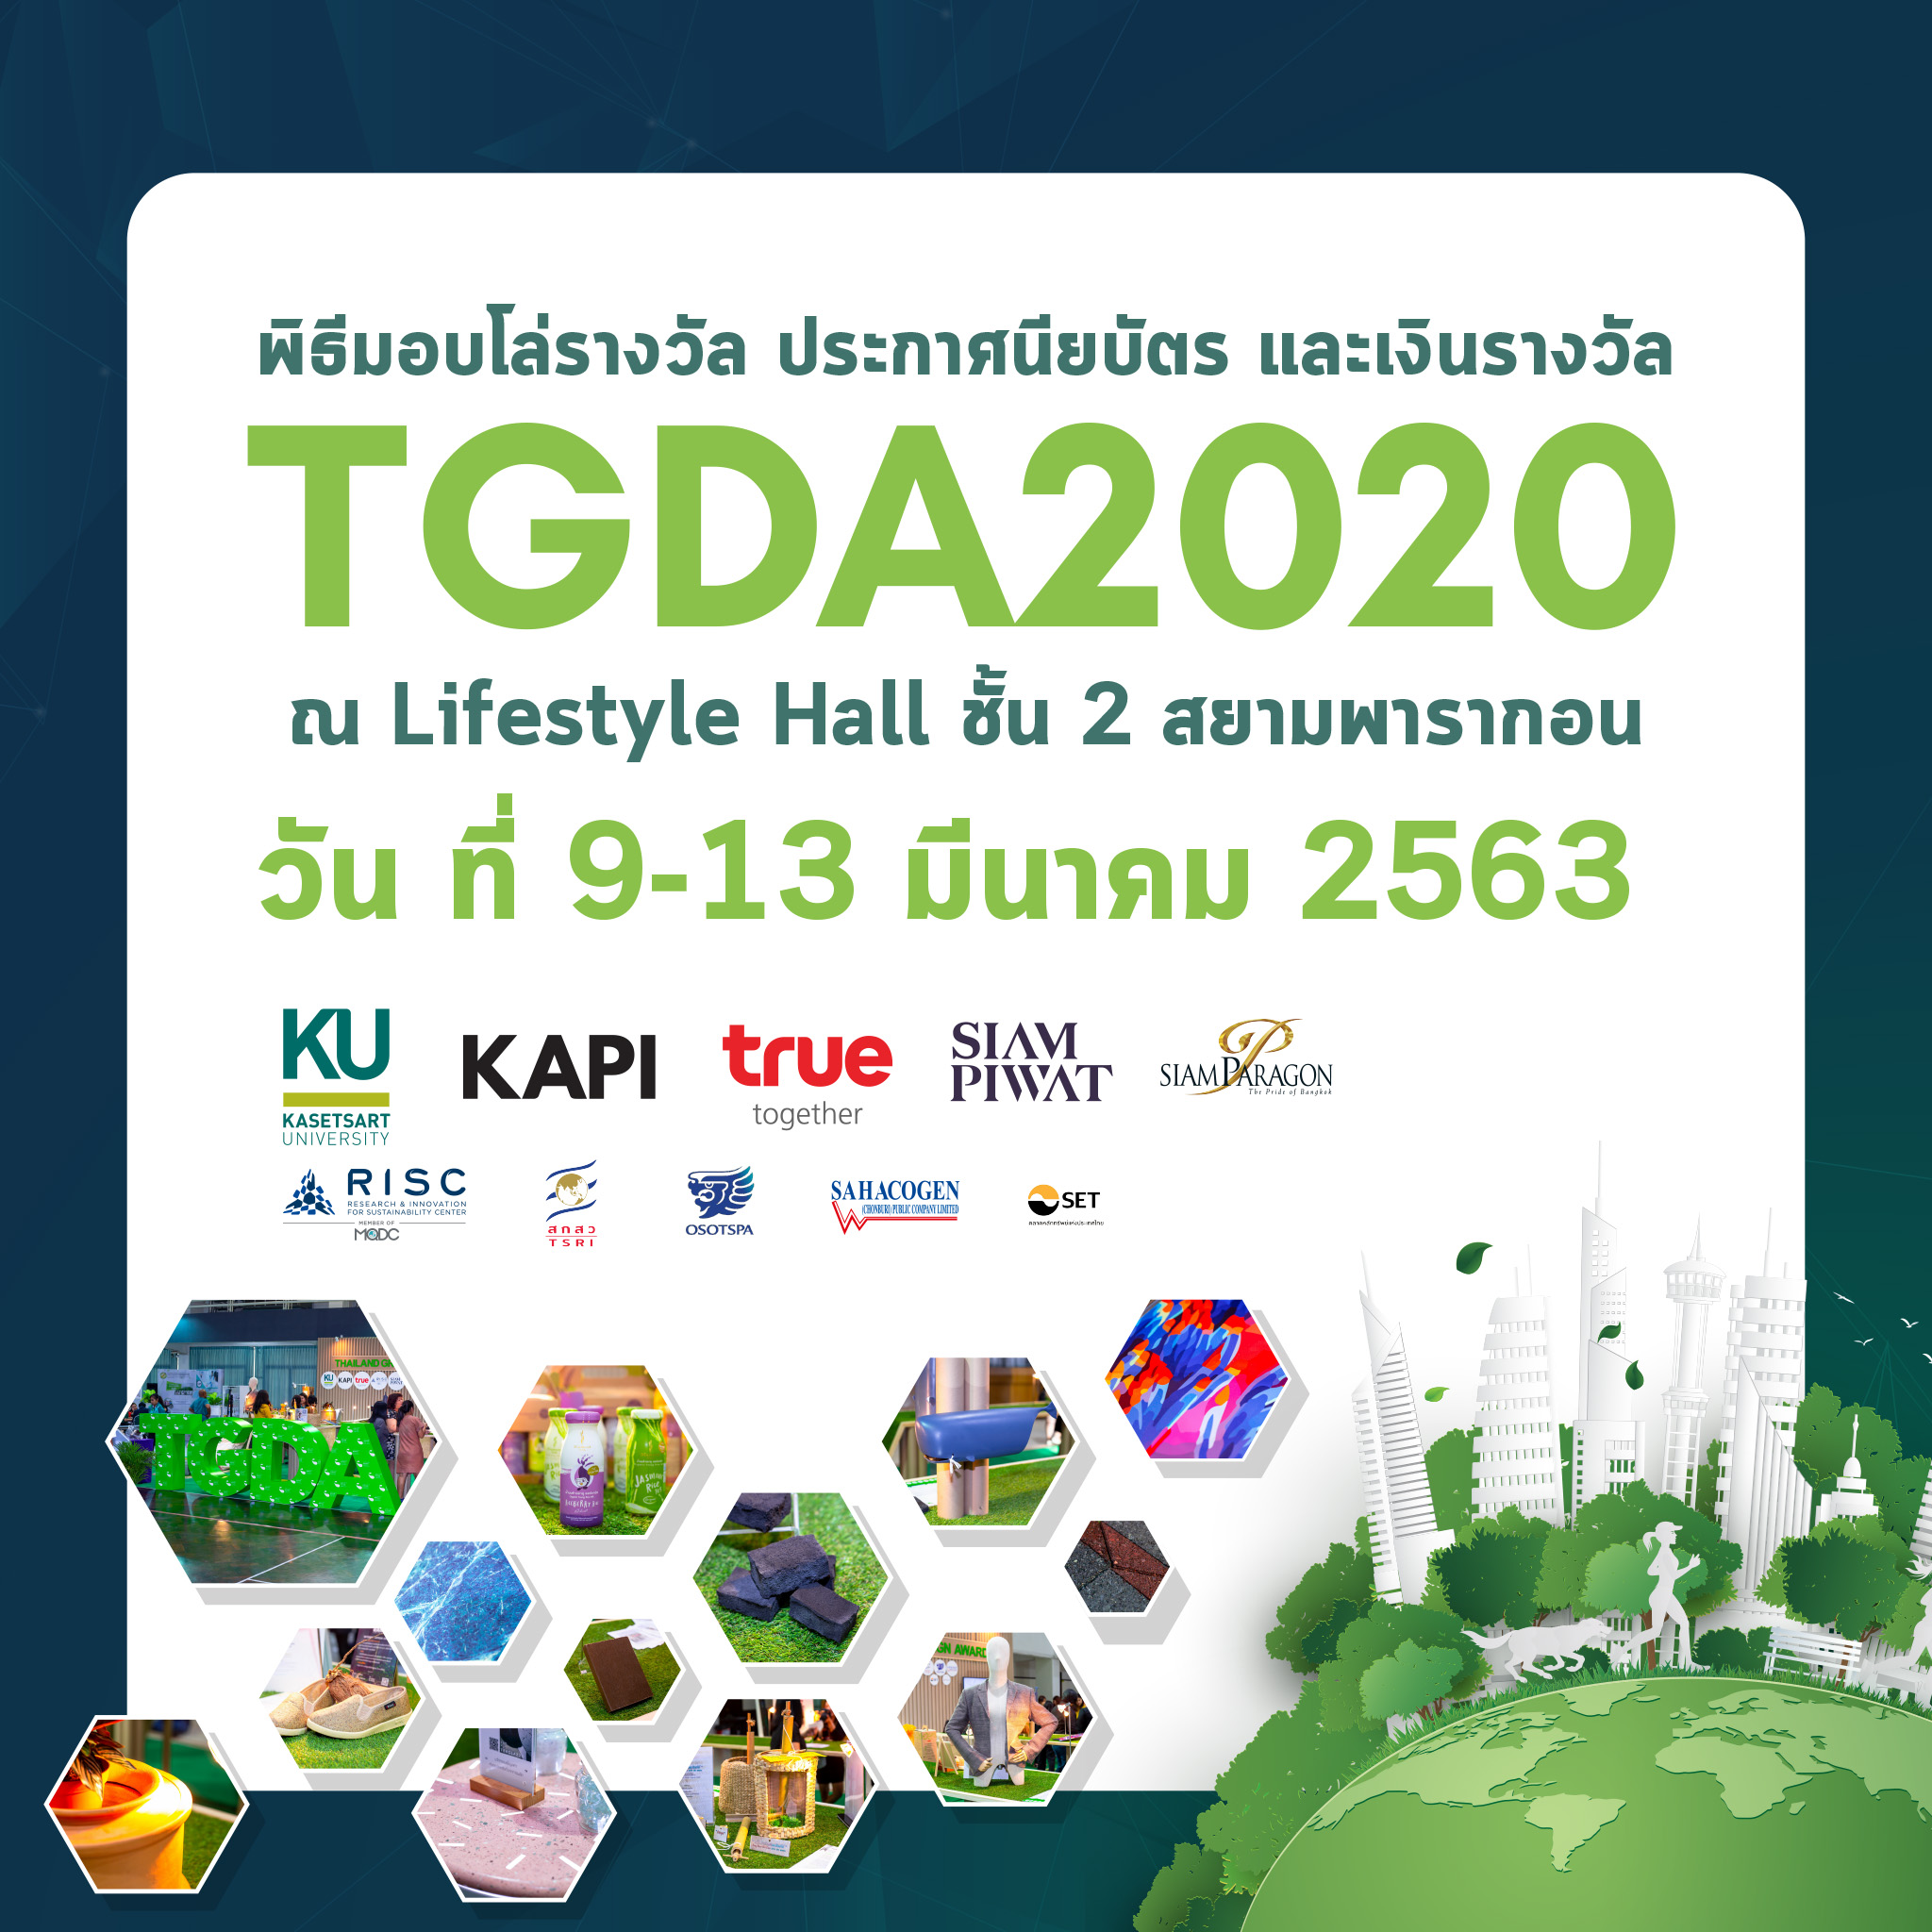 ขอเชิญทุกท่านร่วมงานพิธีมอบโล่รางวัล ประกาศนียบัตร และเงินรางวัลของการประกวดผลิตภัณฑ์ที่เป็นมิตรต่อสิ่งแวดล้อม Thailand Green Design Awards 2020